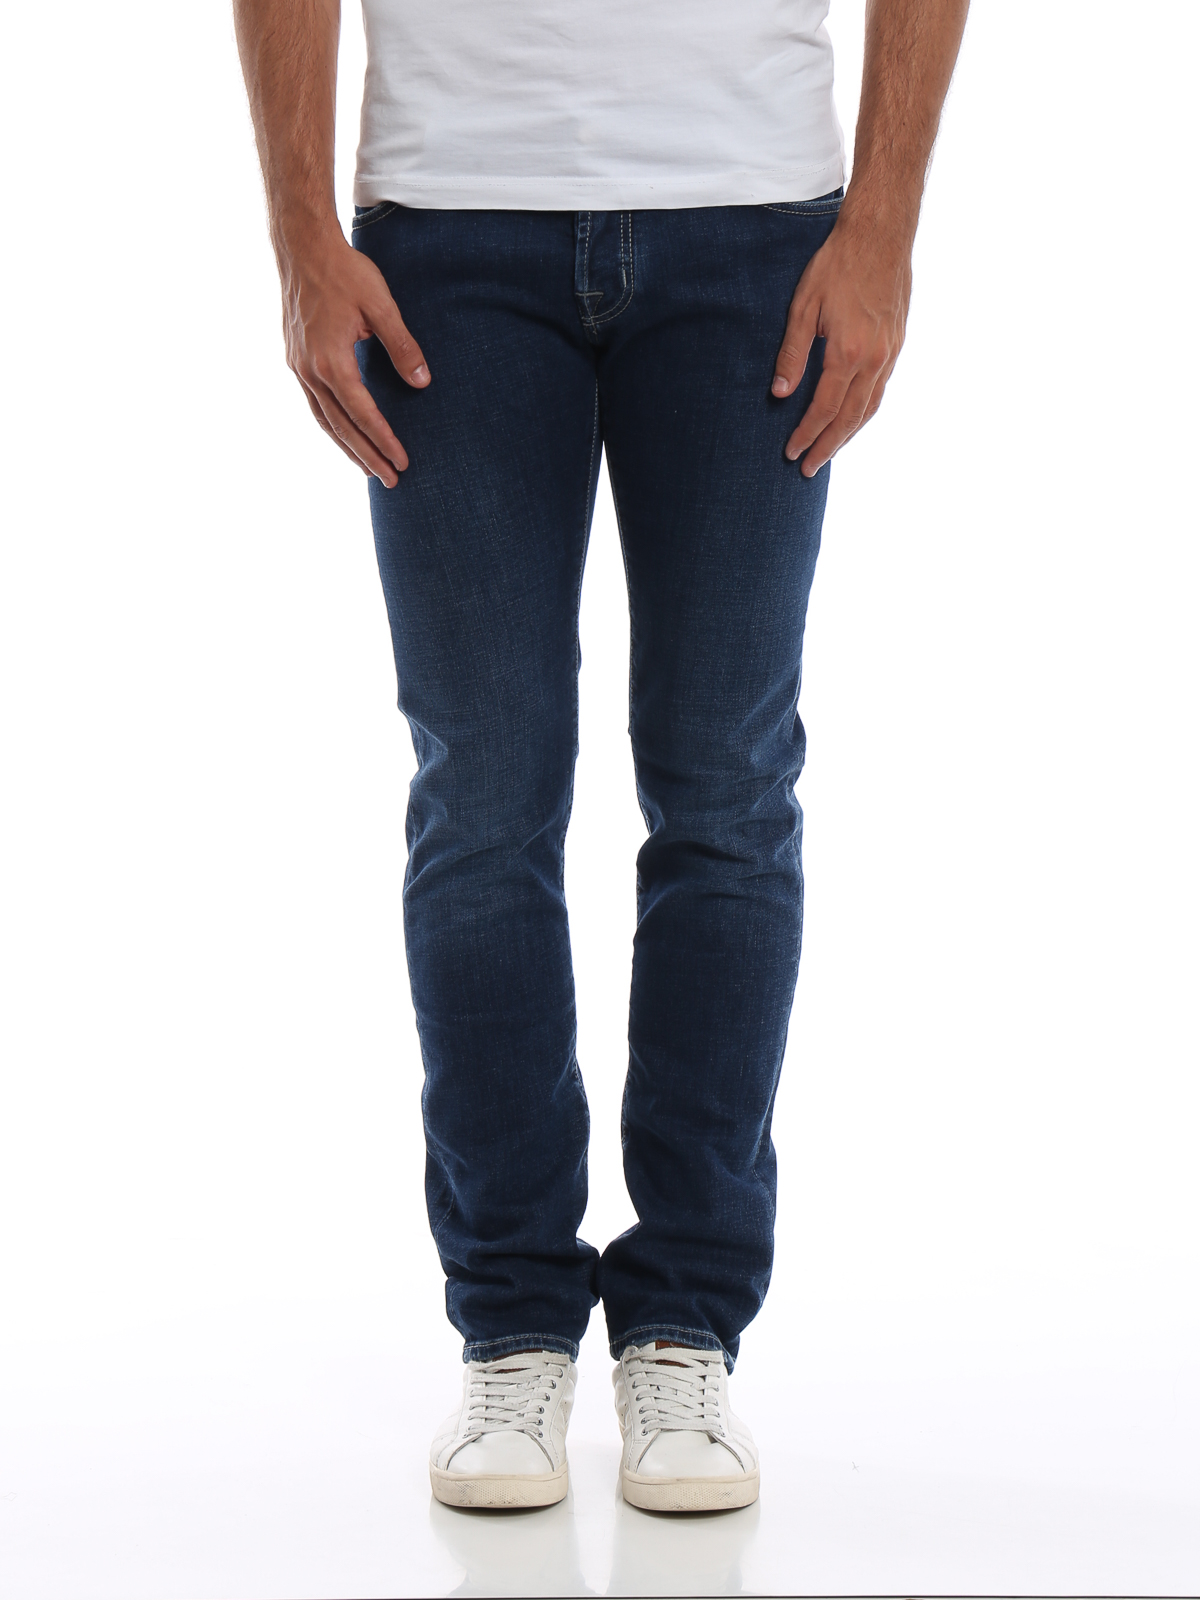 jacob cohen jeans style 622